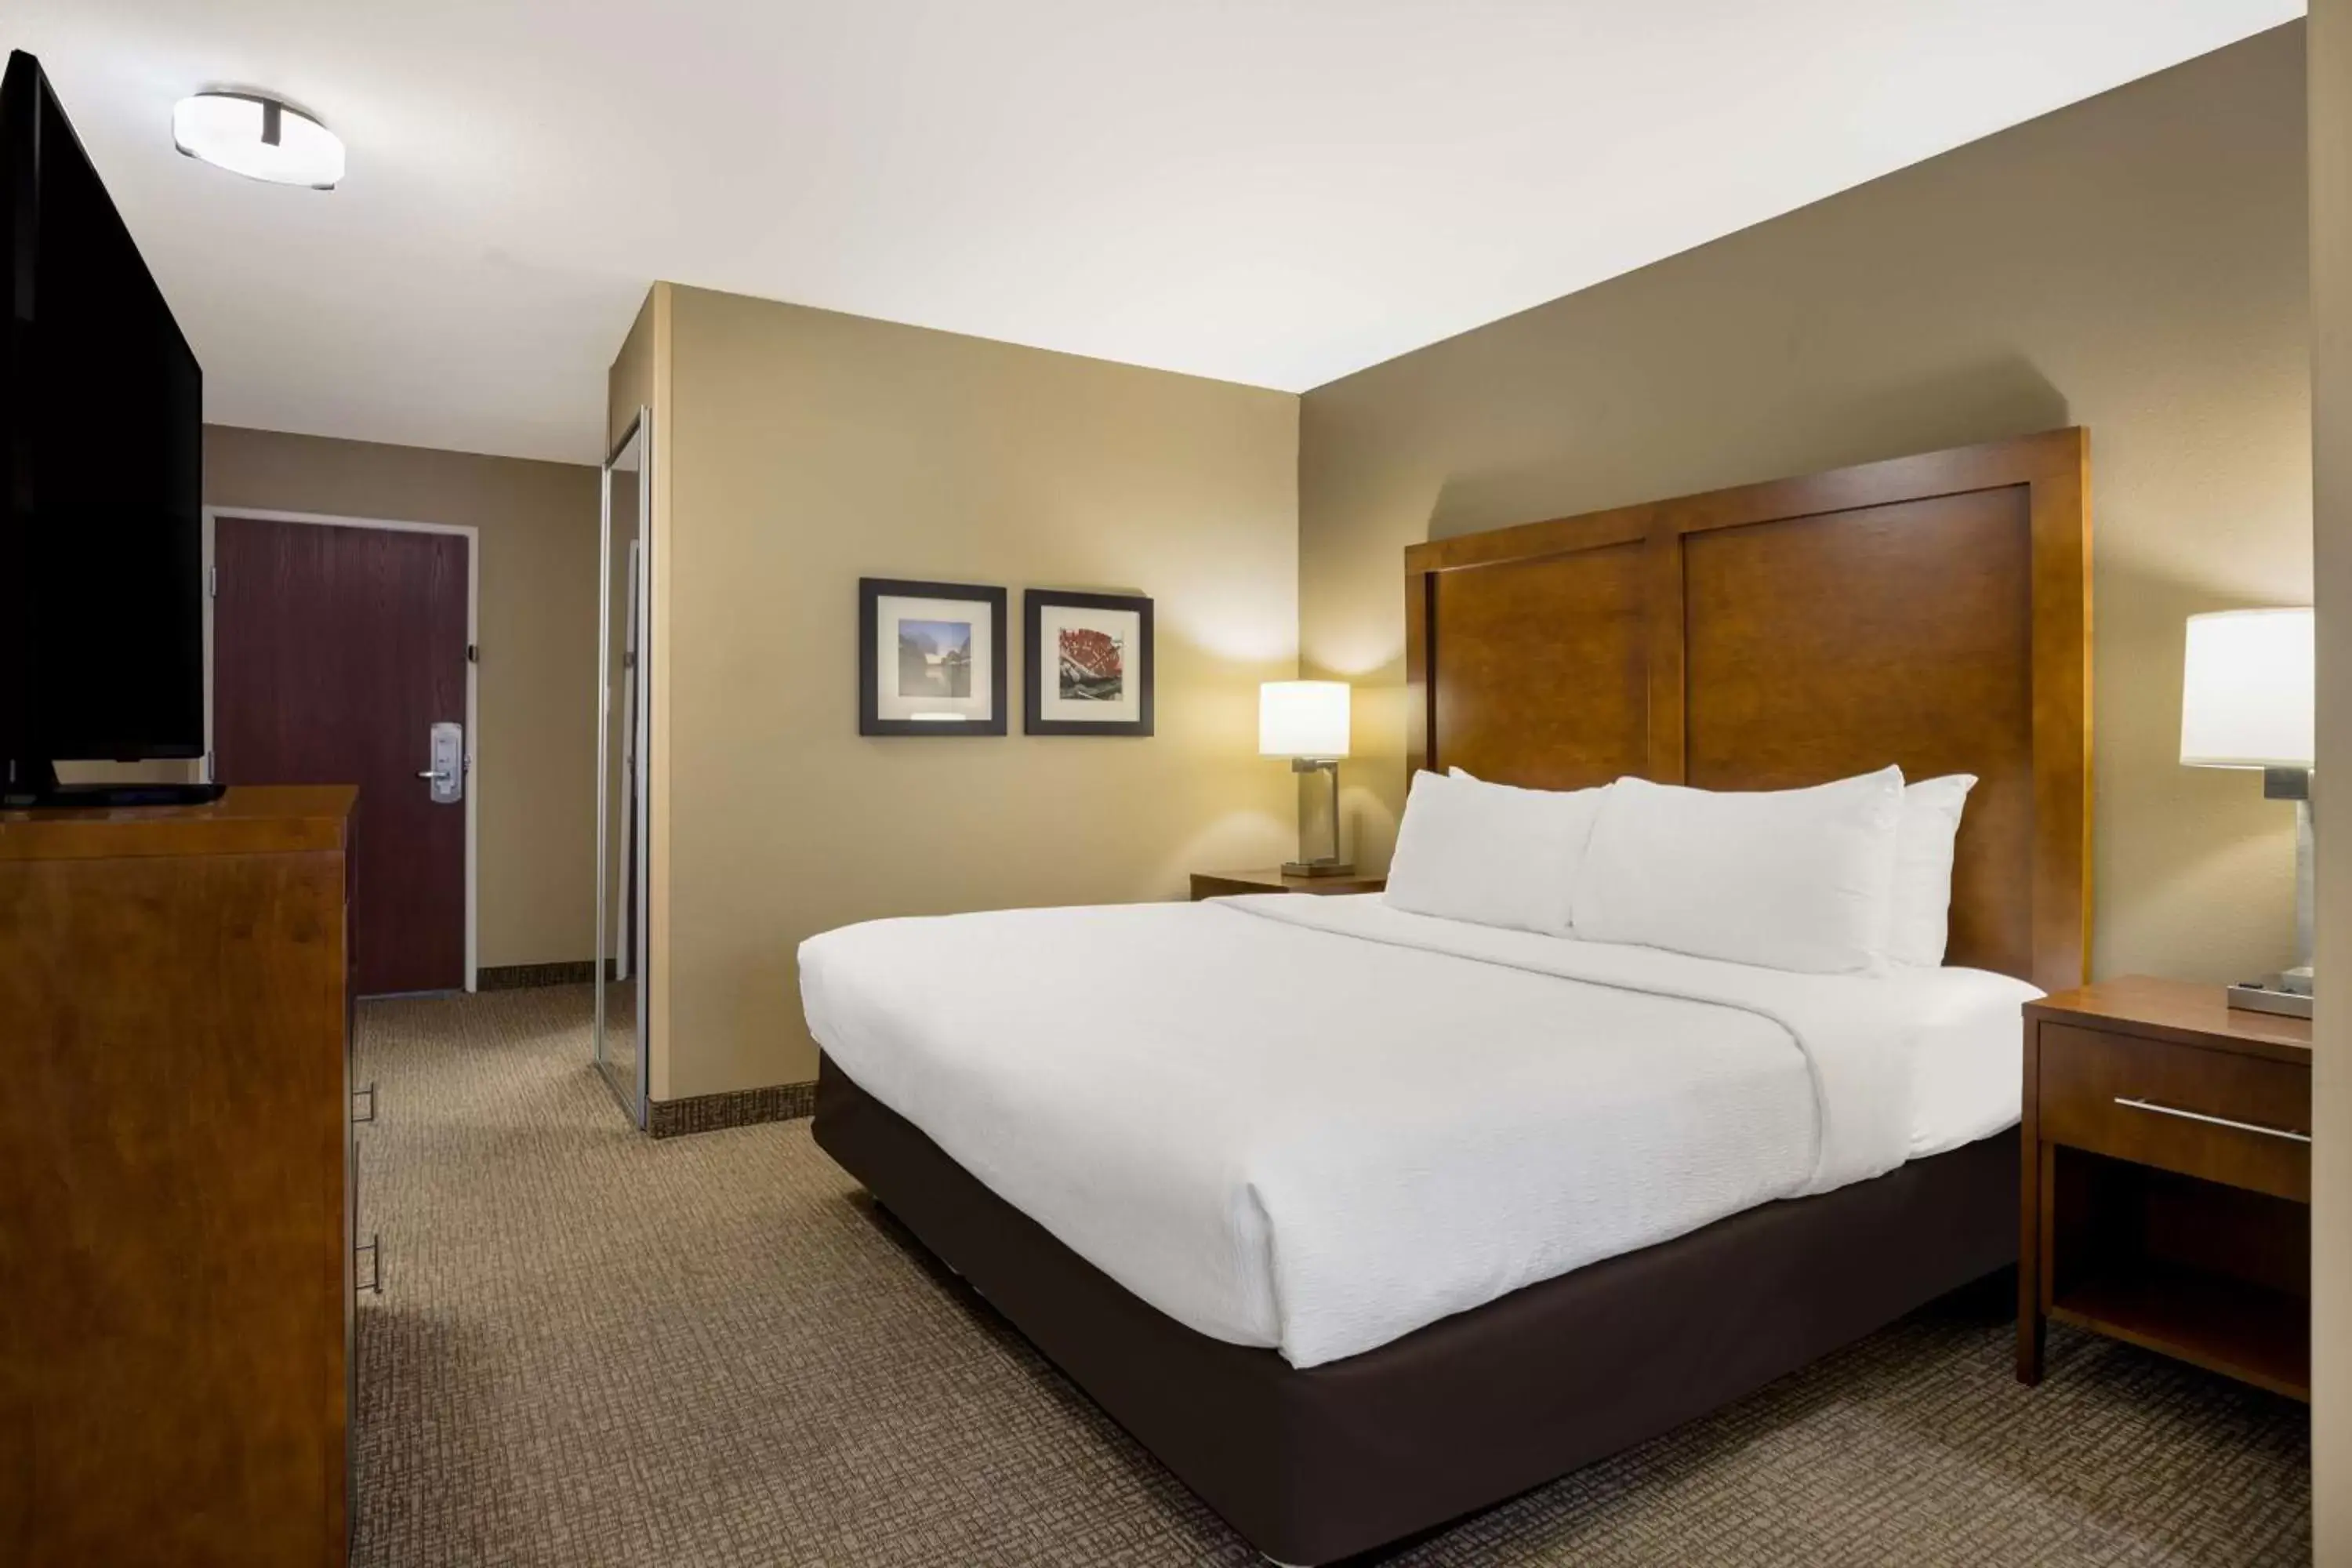 Bedroom, Bed in Best Western Morgan City Inn